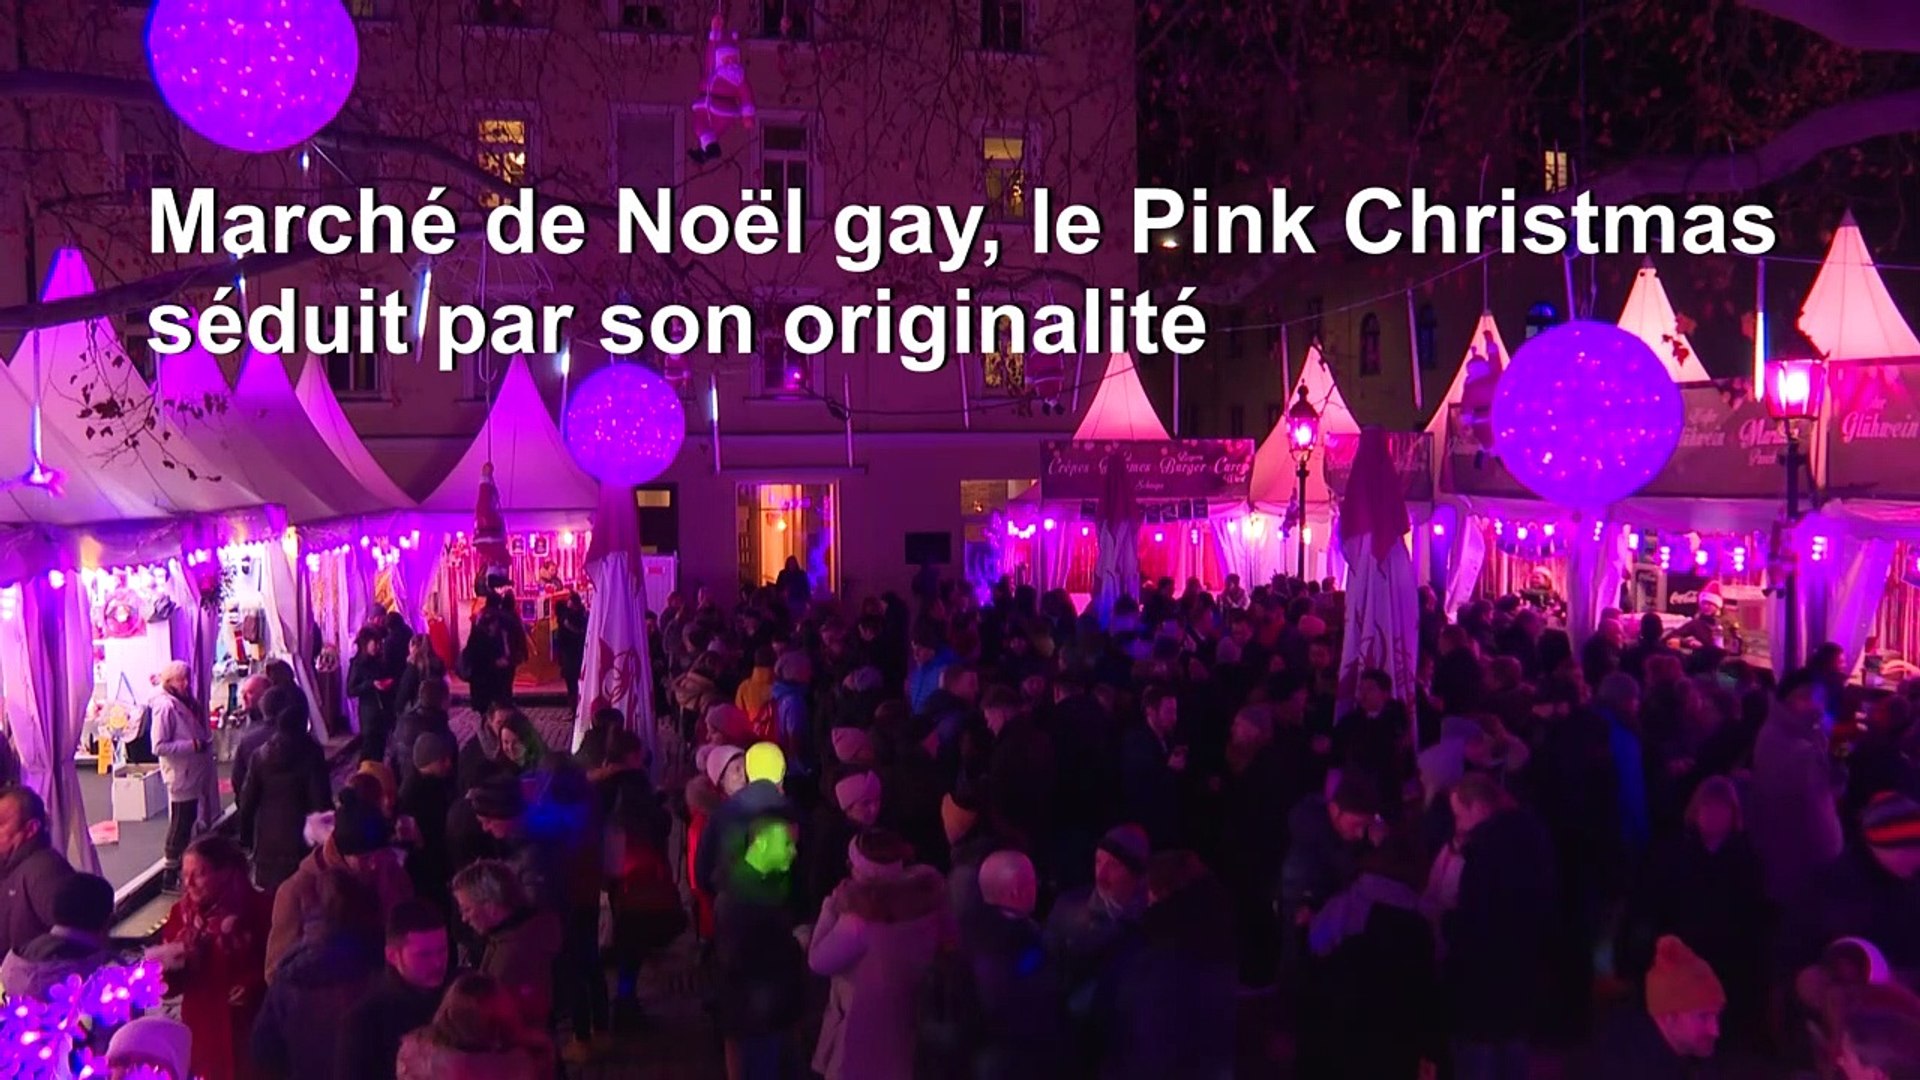 Pink Christmas": le marché de Noël gay de Munich détonne - Vidéo Dailymotion